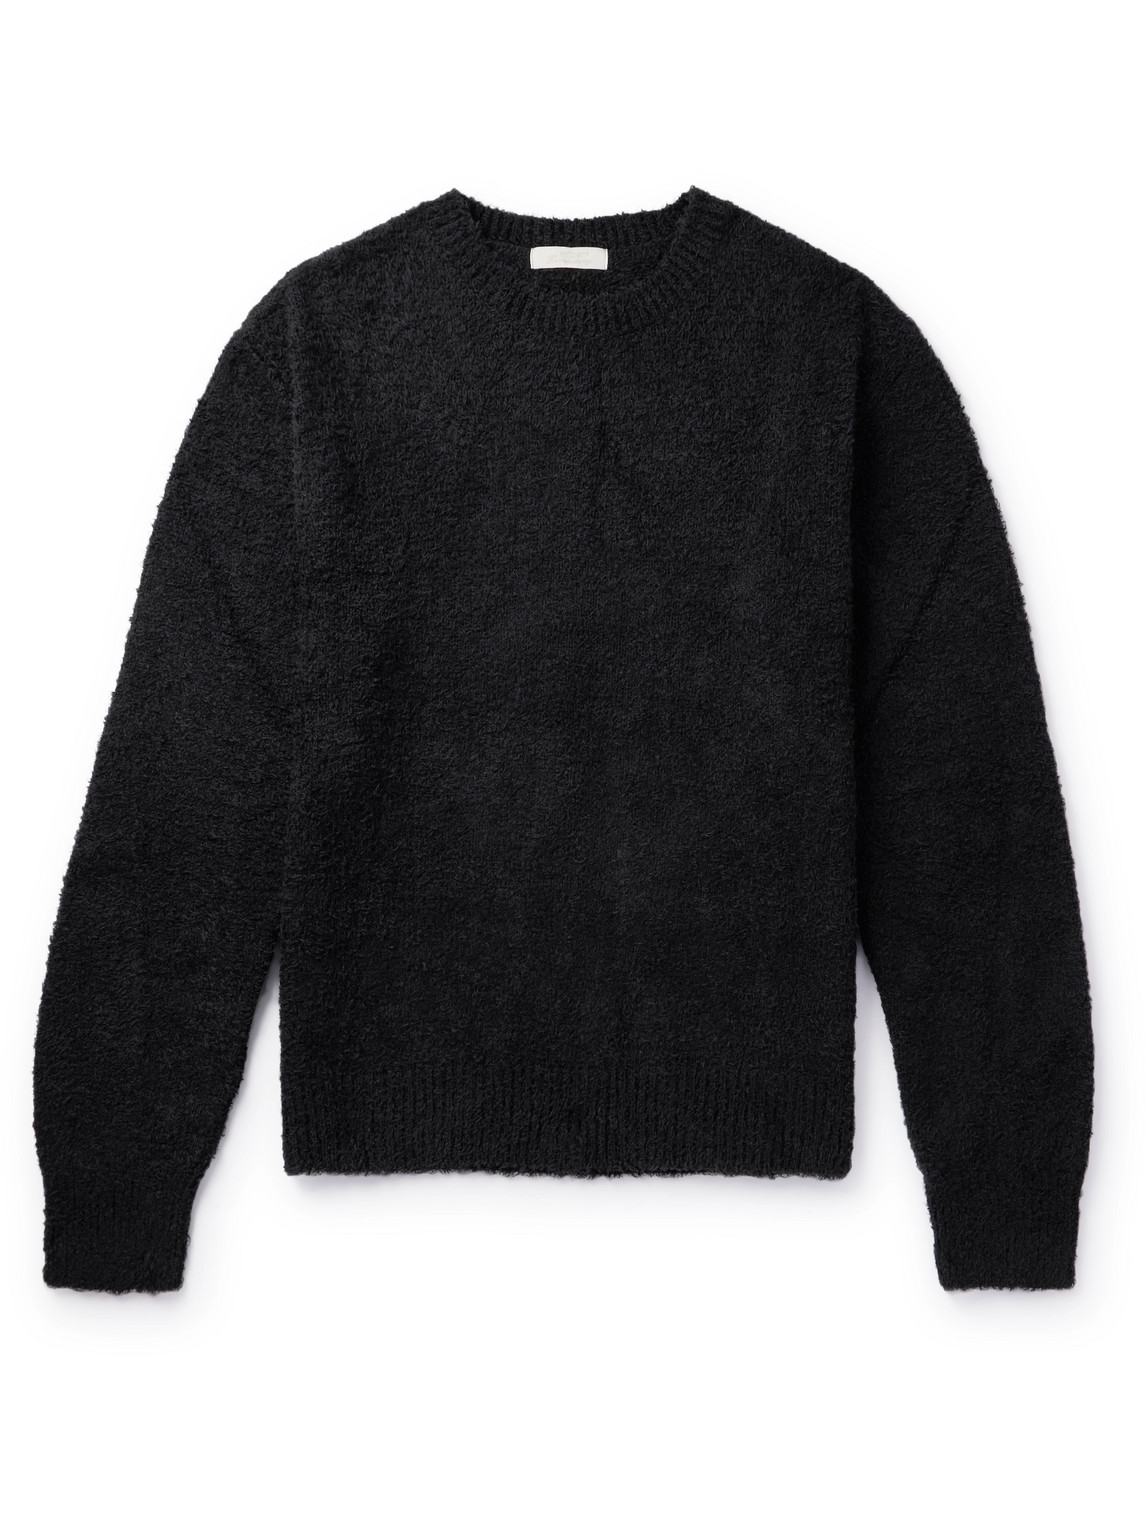 Mfpen Black Furry Sweater